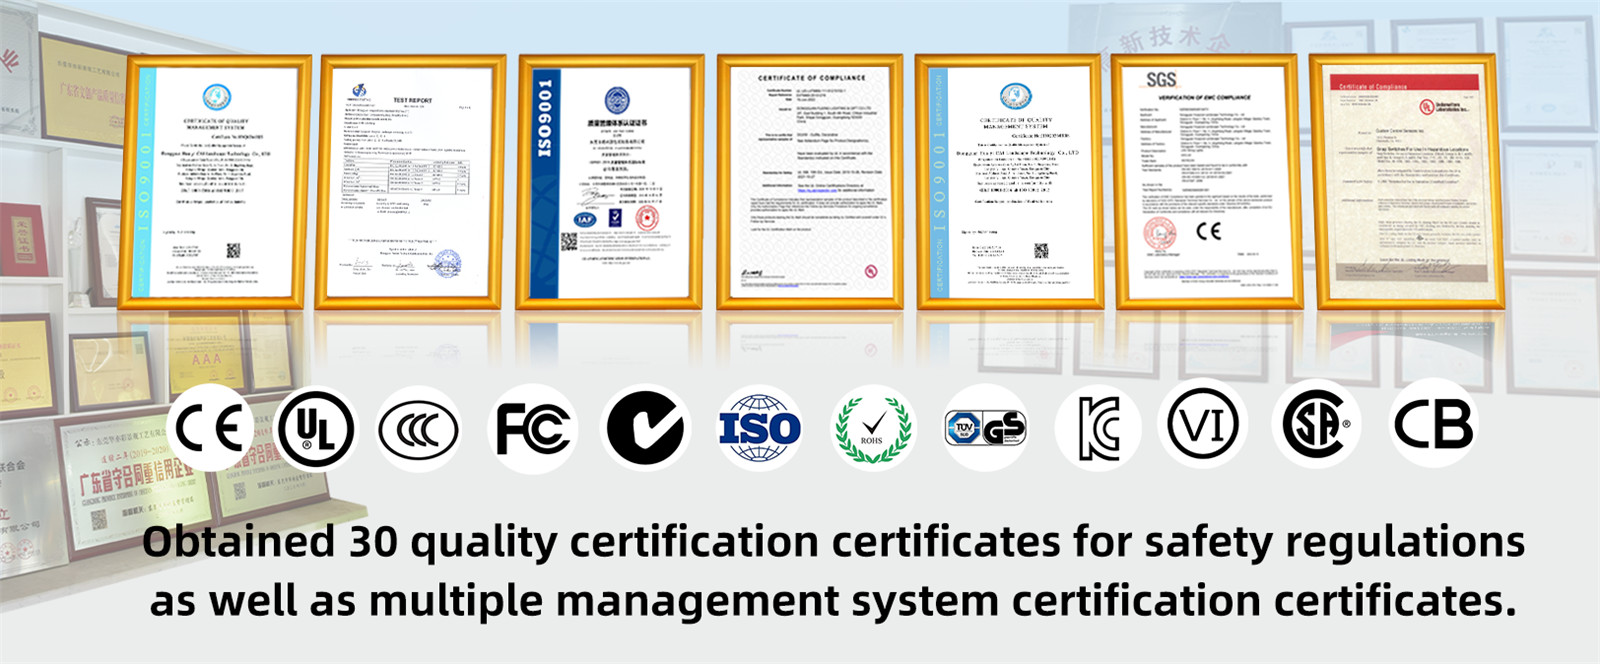 安全規制に関する品質認証証明書を30件取得し、複数のマネジメントシステム認証証明書を取得。